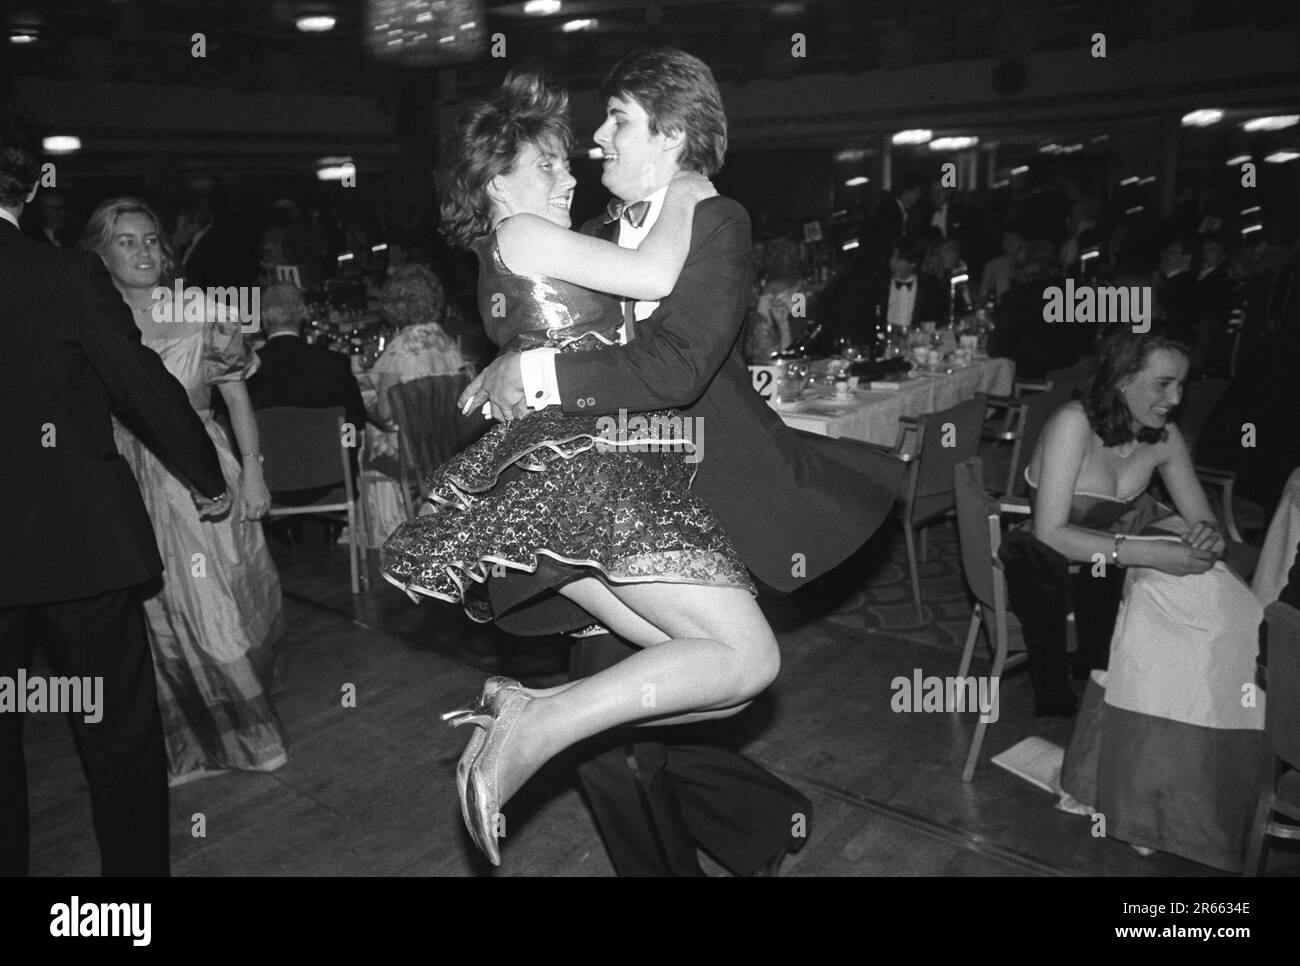 Un jeune couple riche de Sloane Rangers se présente sur la piste de danse à l'œuvre caritative annuelle Rose ball, qui s'est tenue dans le Grosvenor House Hotel, Park Lane. Mayfair, Londres, Angleterre vers mai 1982. Banque D'Images